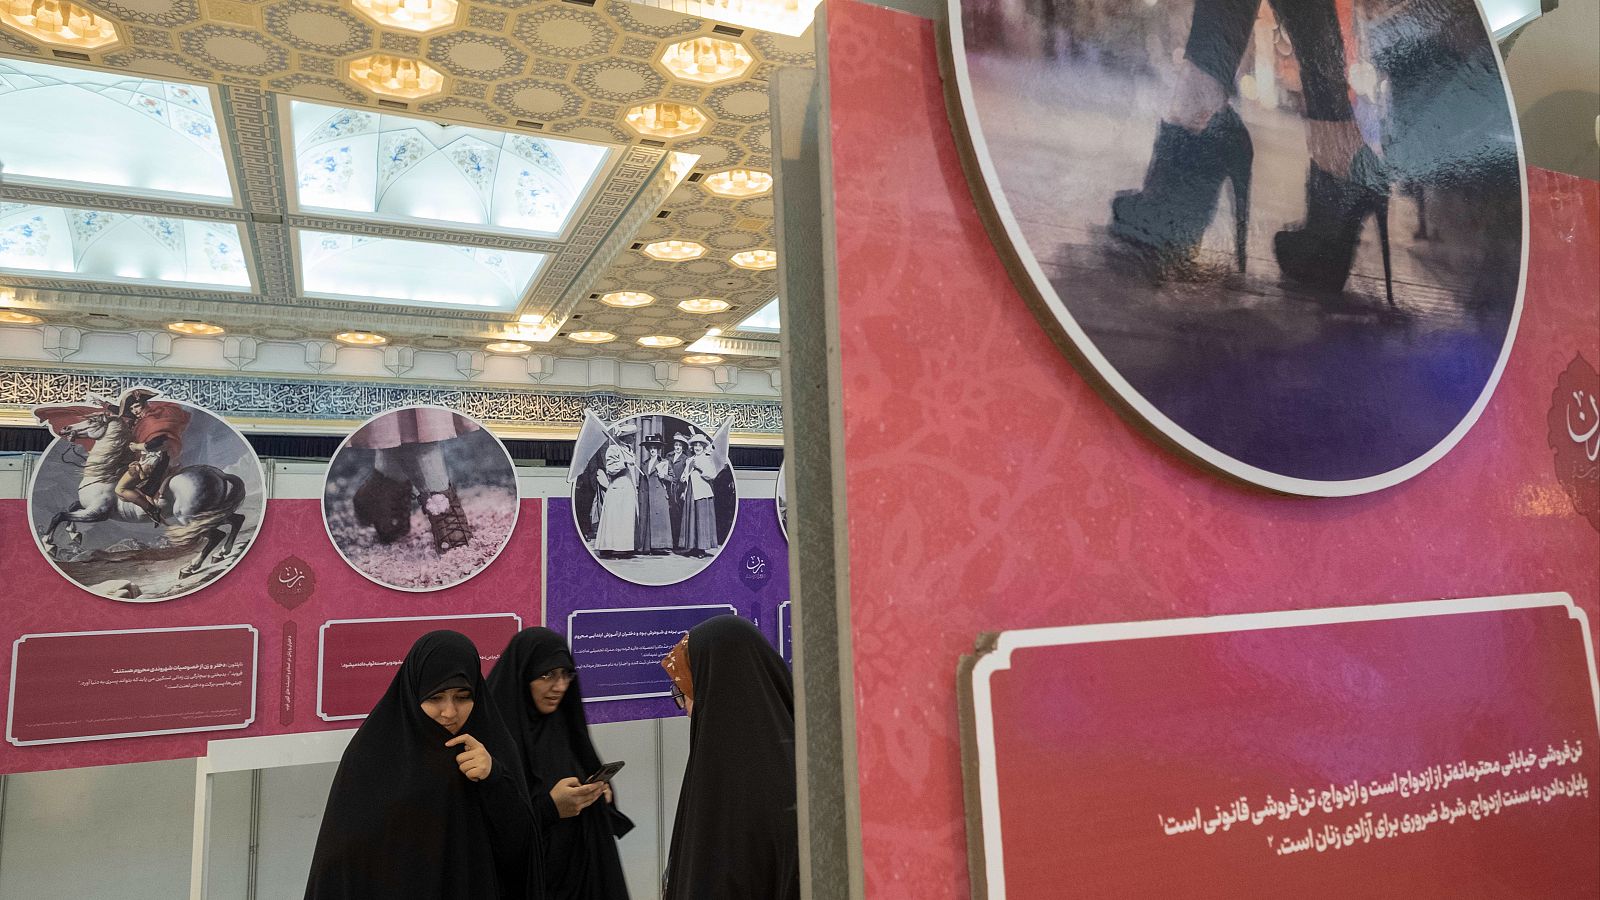 Mujeres iraníes con velo se encuentran junto a un cartel (derecha) con la imagen de las piernas de una mujer iraní y una escritura persa que dice: "La prostitución callejera es más respetable que el matrimonio, y el matrimonio es prostitución legal"